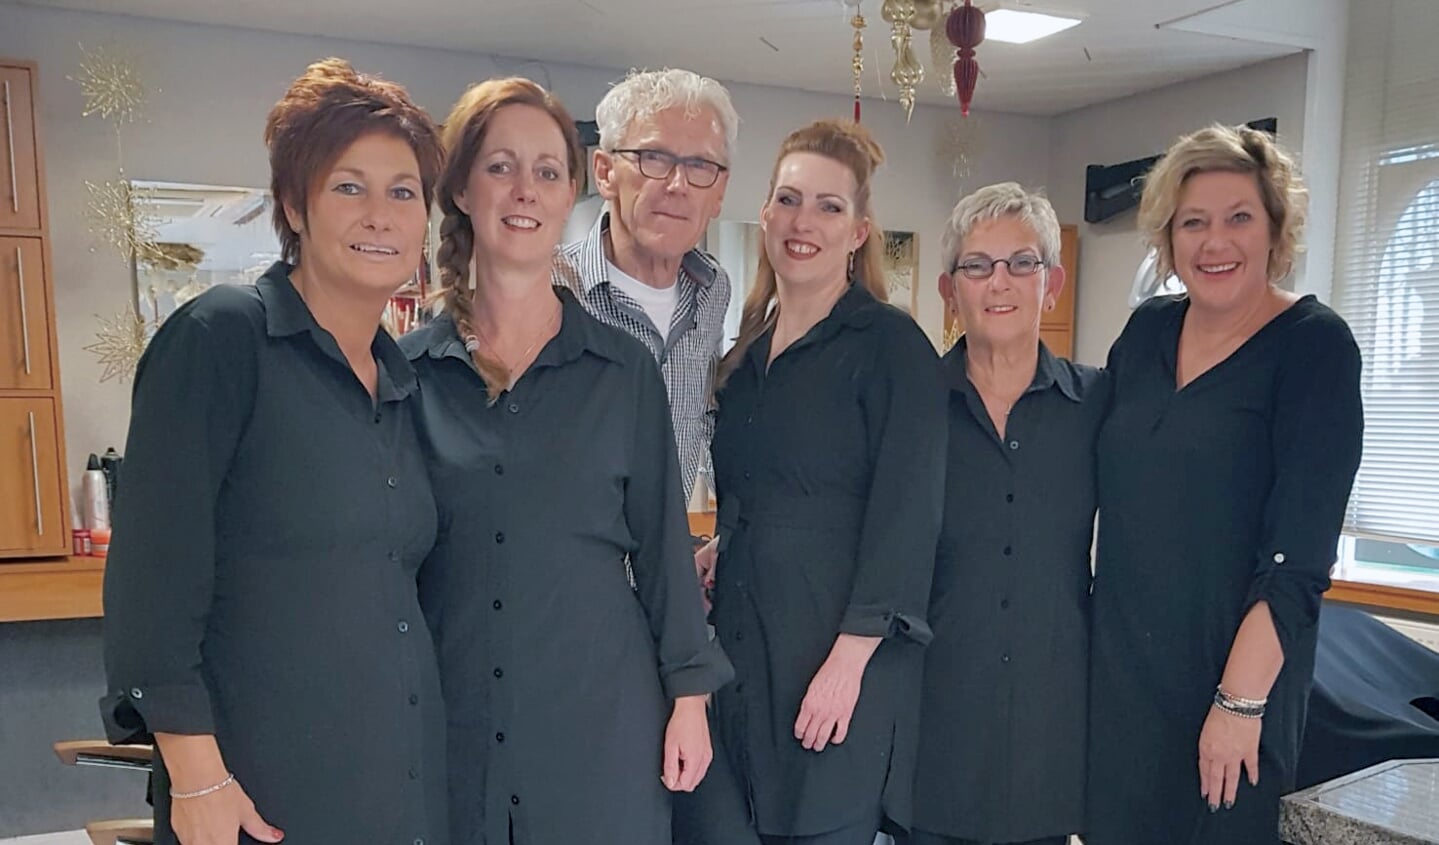 Het team van Salon Reintjes: Diana, Kim, Geert, Bianca, Dorien en Karen. Eigen foto